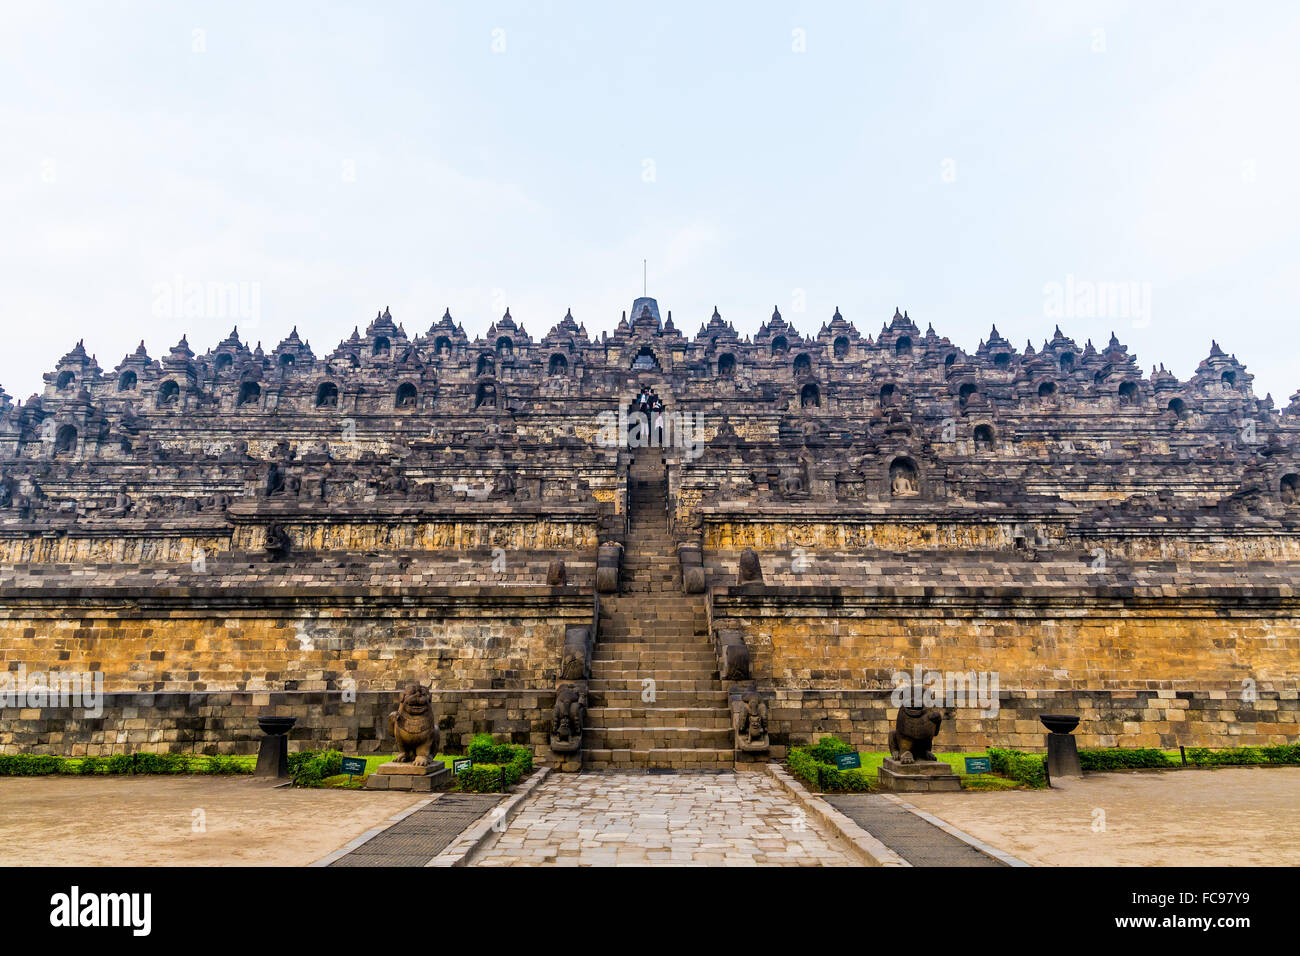 Gli stupa belli del complesso del Tempio di Borobudur, Yogyakarta, Indonesia. Borobudur è il tempio buddista più grande del mondo. Foto Stock